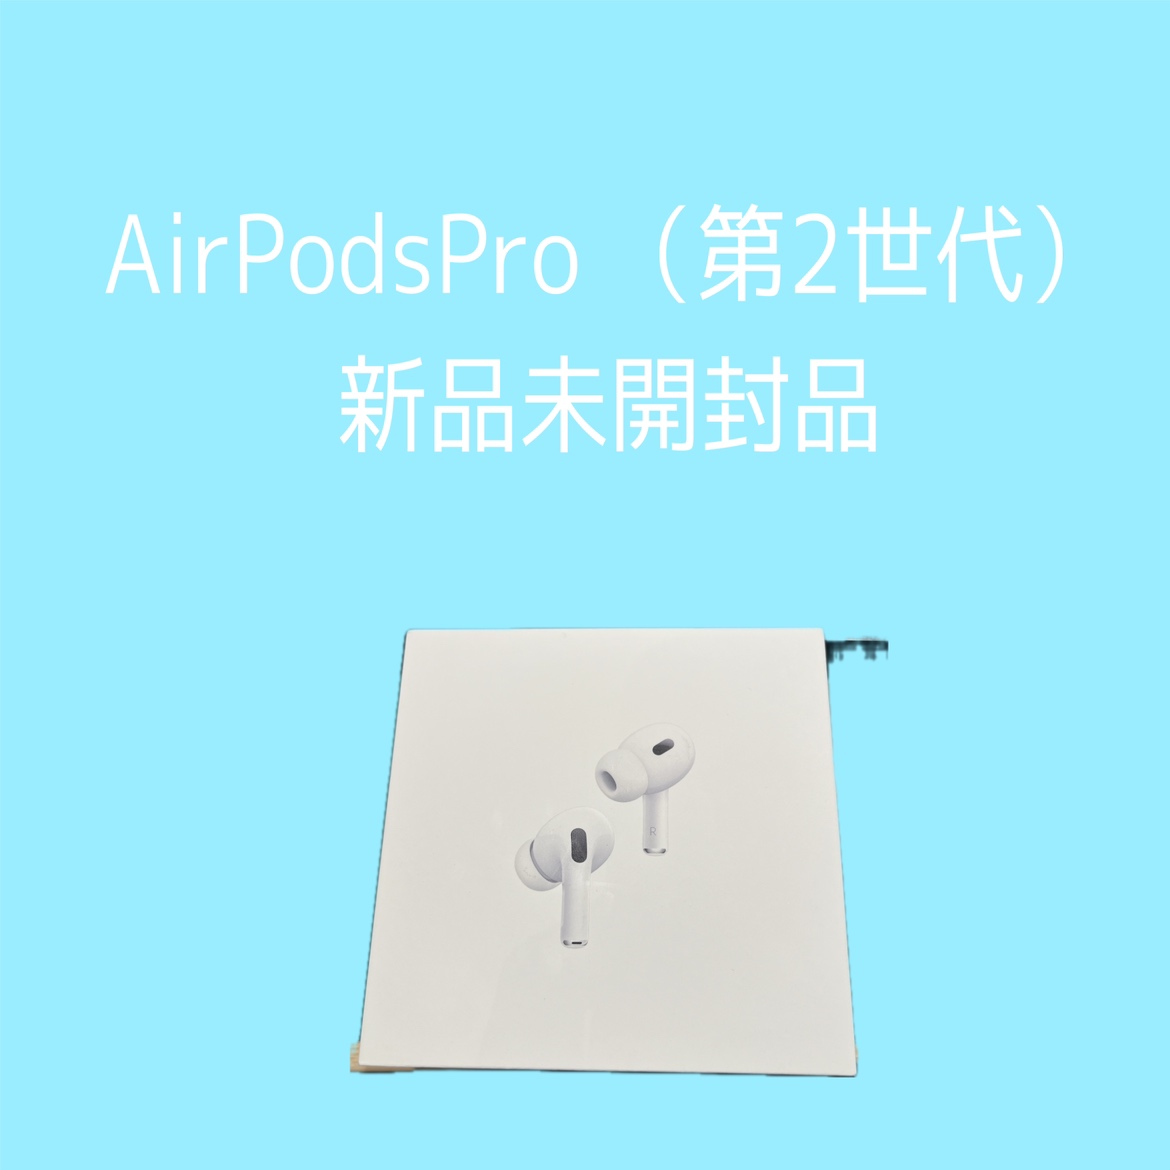 AirPodsPro(第二世代)・新品未開封品【天神地下街店】